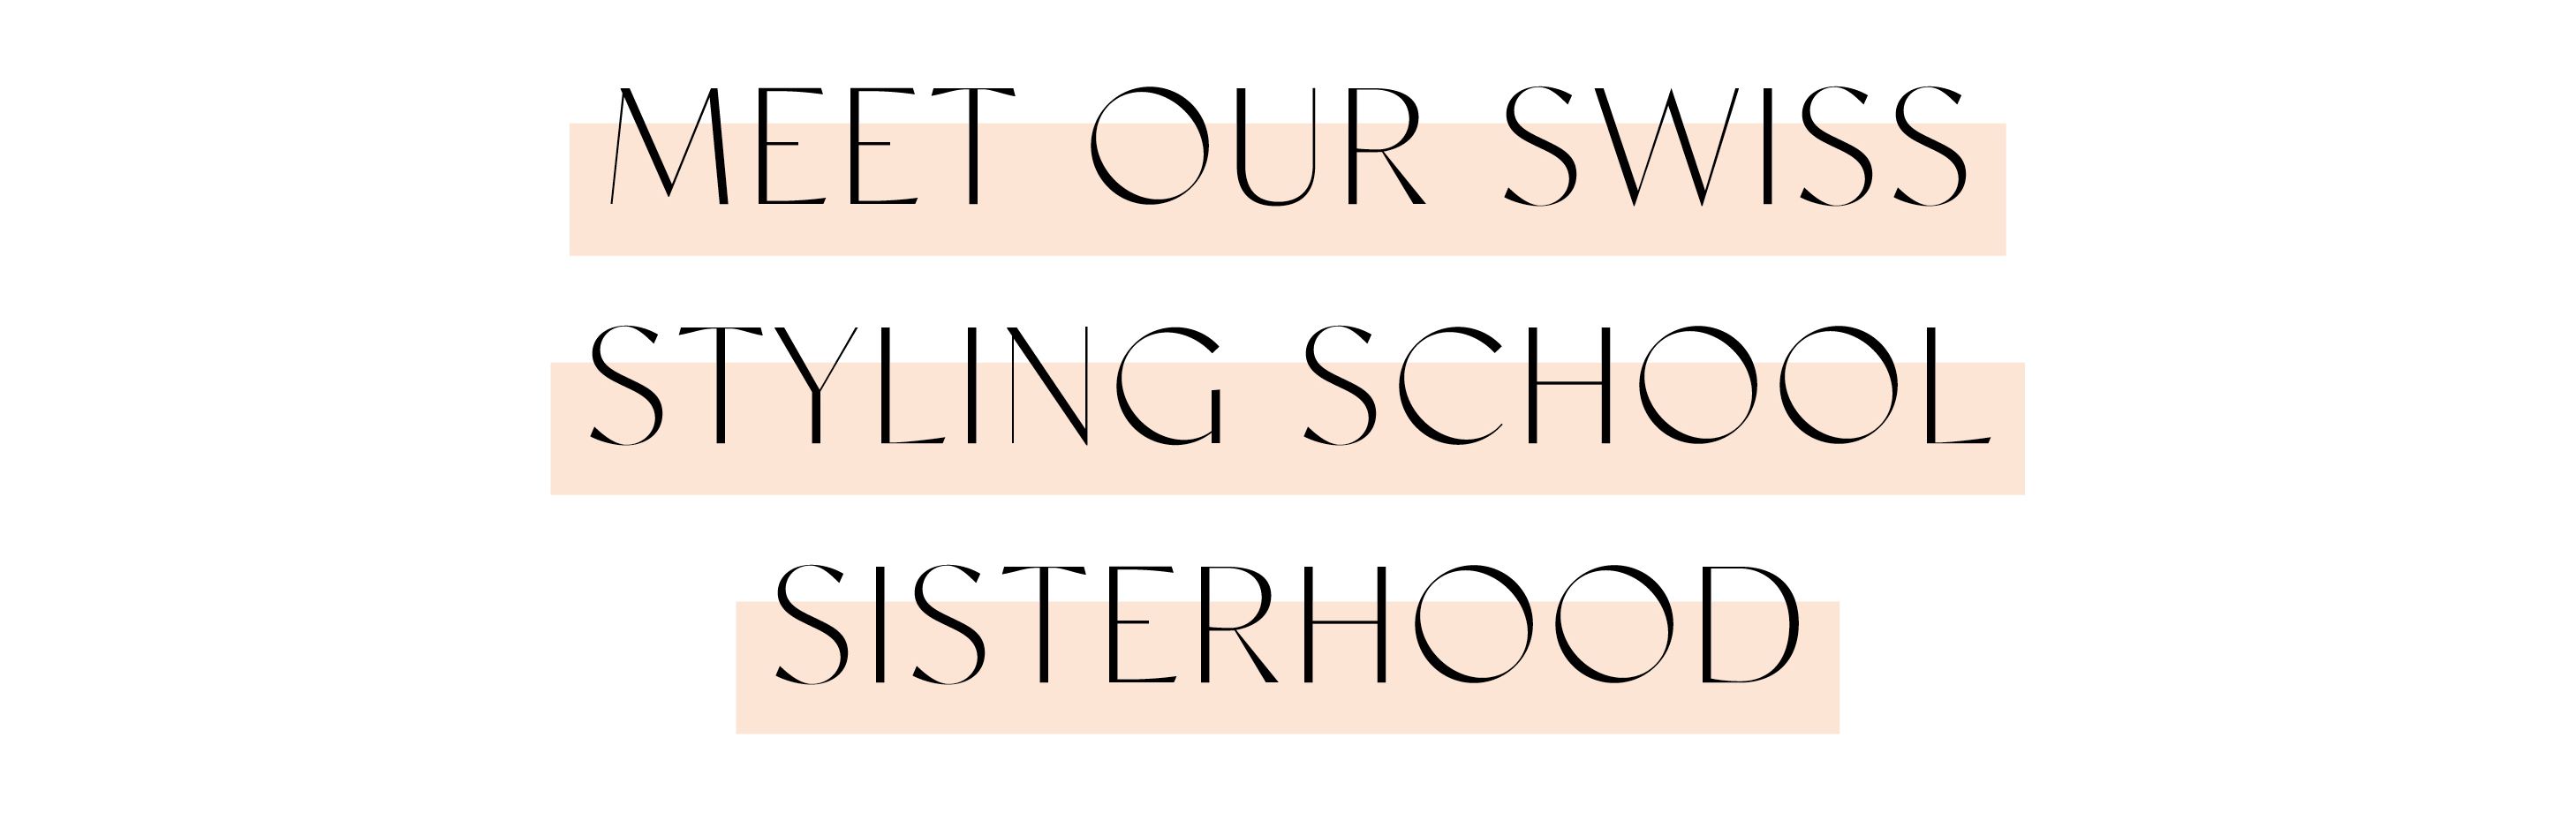 MEET OUR SWISS STYLING SCHOOL SISTERHOOD 